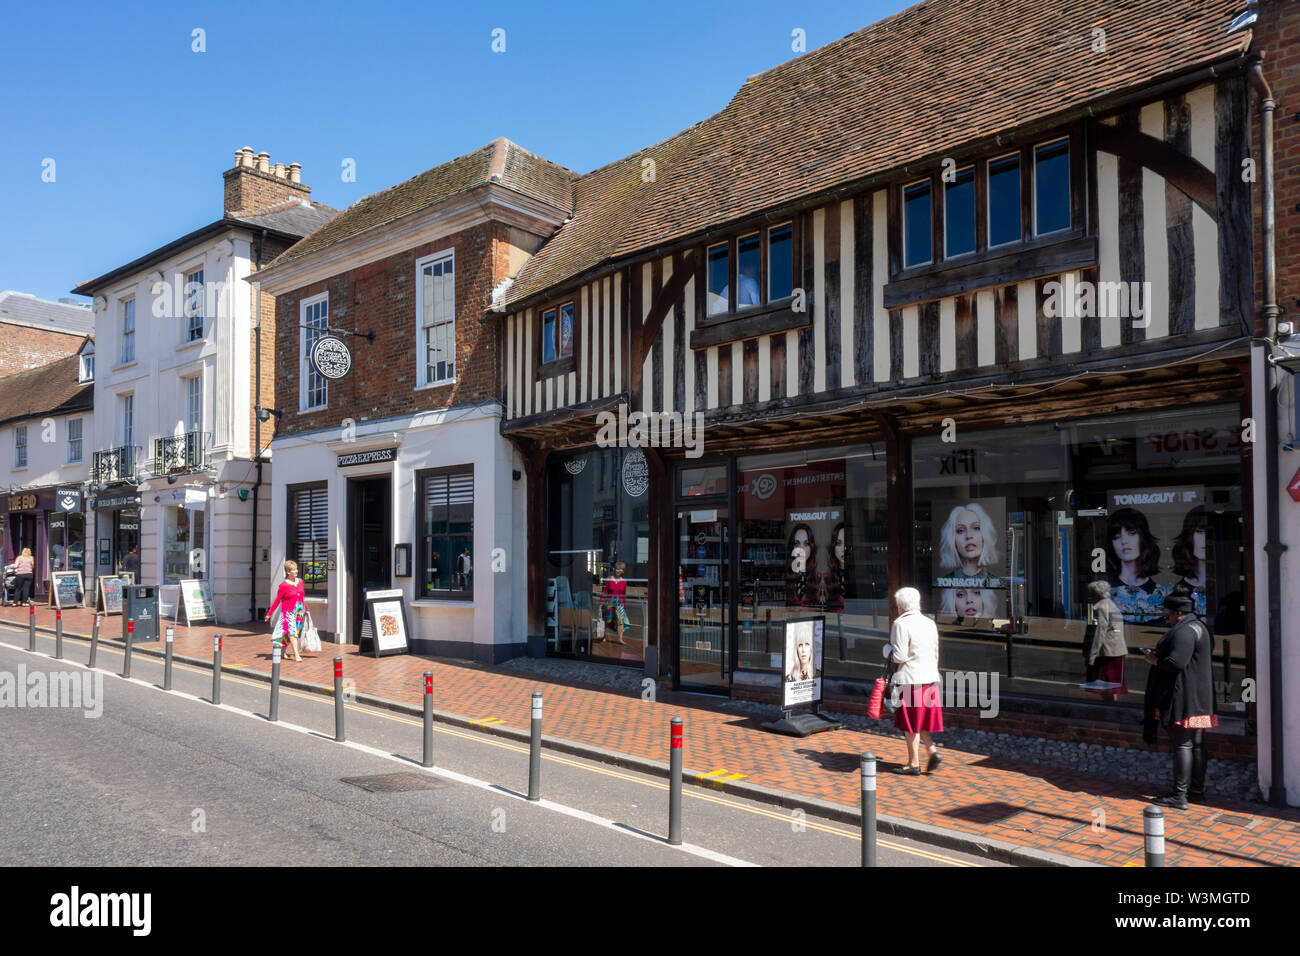 Pista ciclabile, su strada, i pedoni e i negozi di High Street, Watford, Hertfordshire, Regno Unito Foto Stock